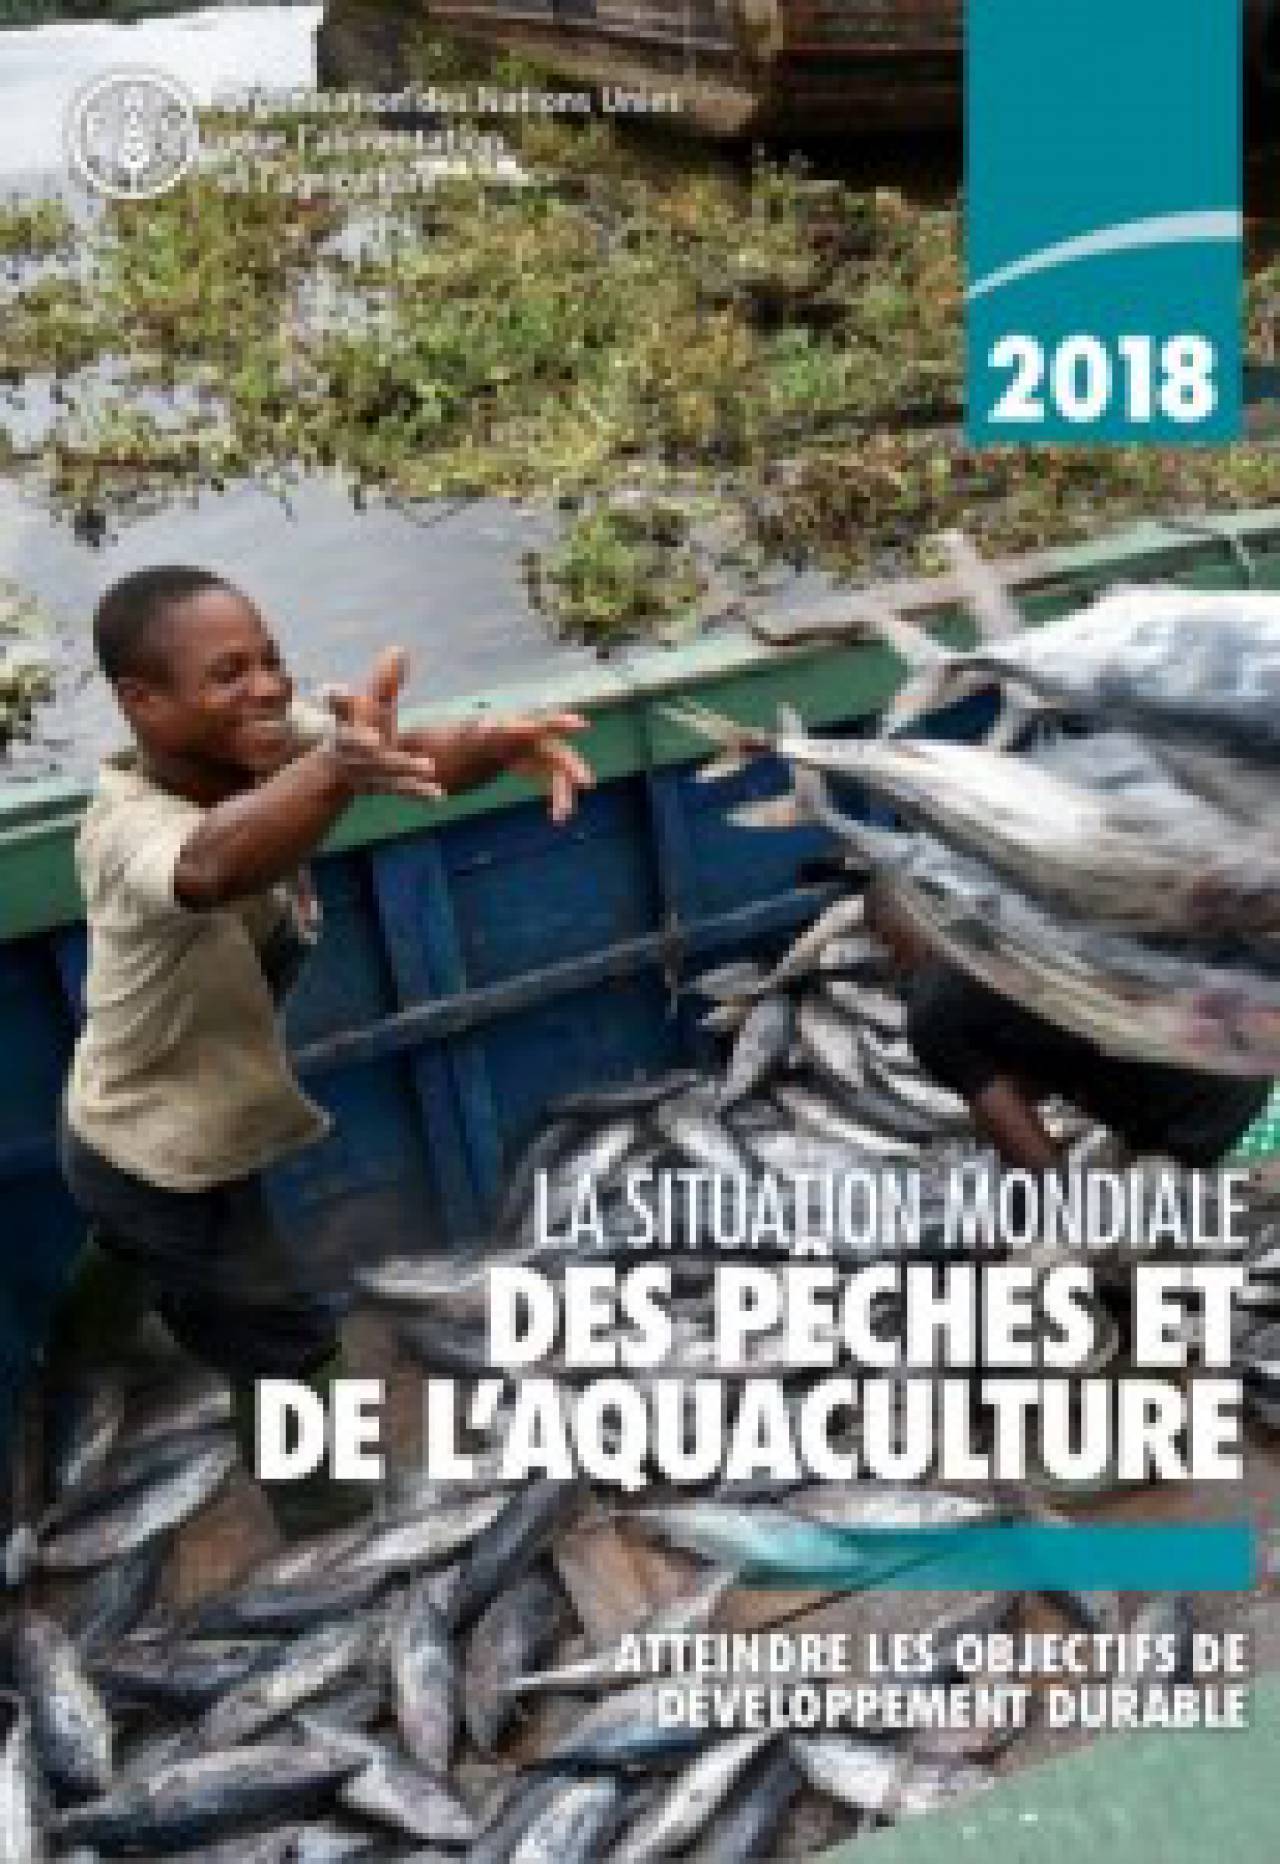 La situation mondiale des pêches et de l'aquaculture